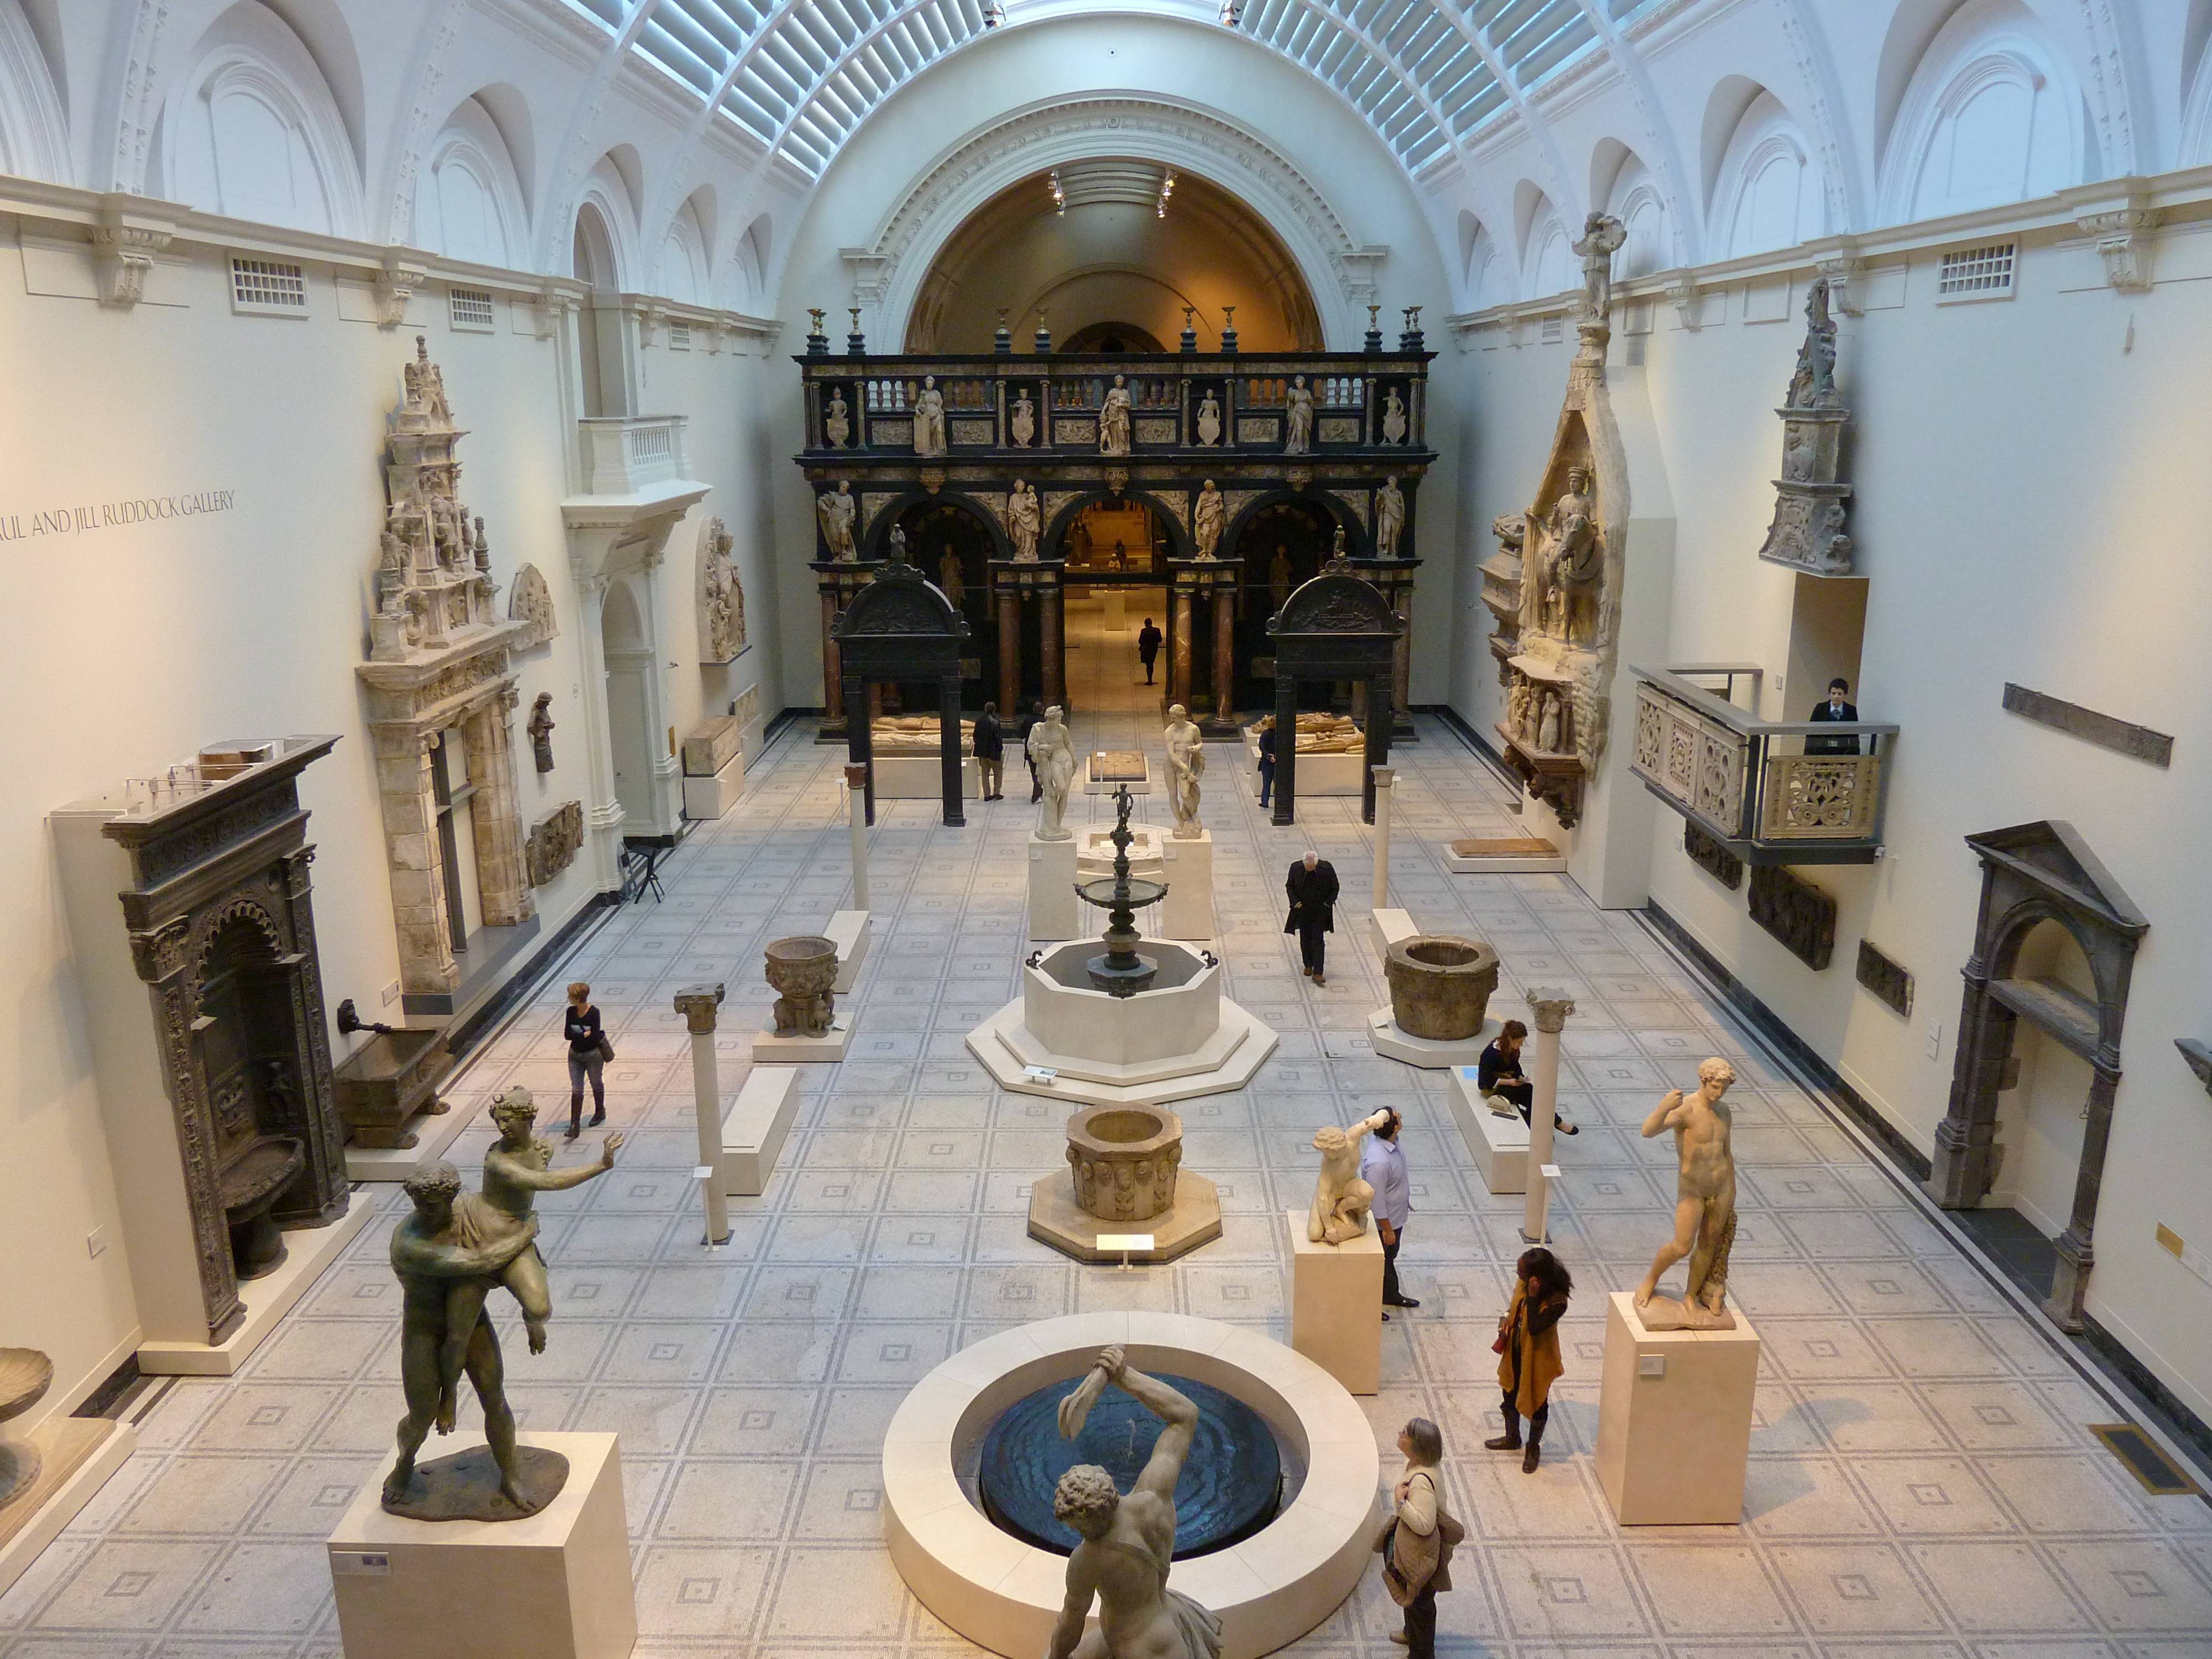 Музей виктории и альберта в лондоне (victoria and albert museum) - информация для туристов расположение